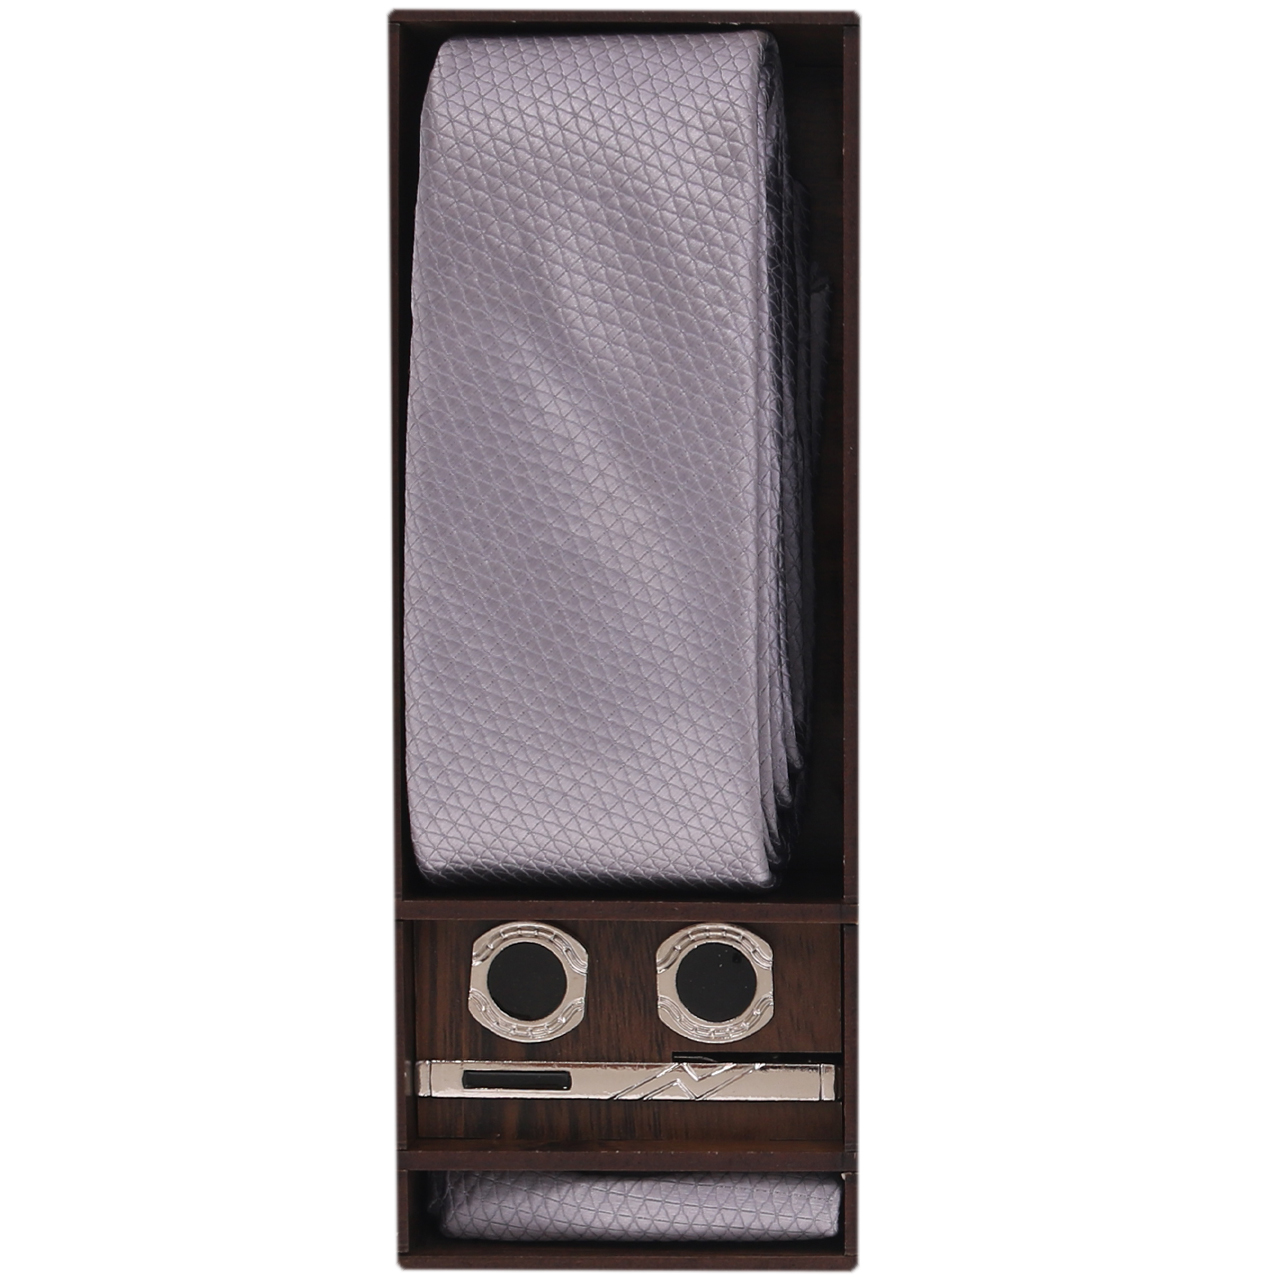 ست کراوات و دستمال جیب و گیره و دکمه سردست مردانه مدل PJ-107433